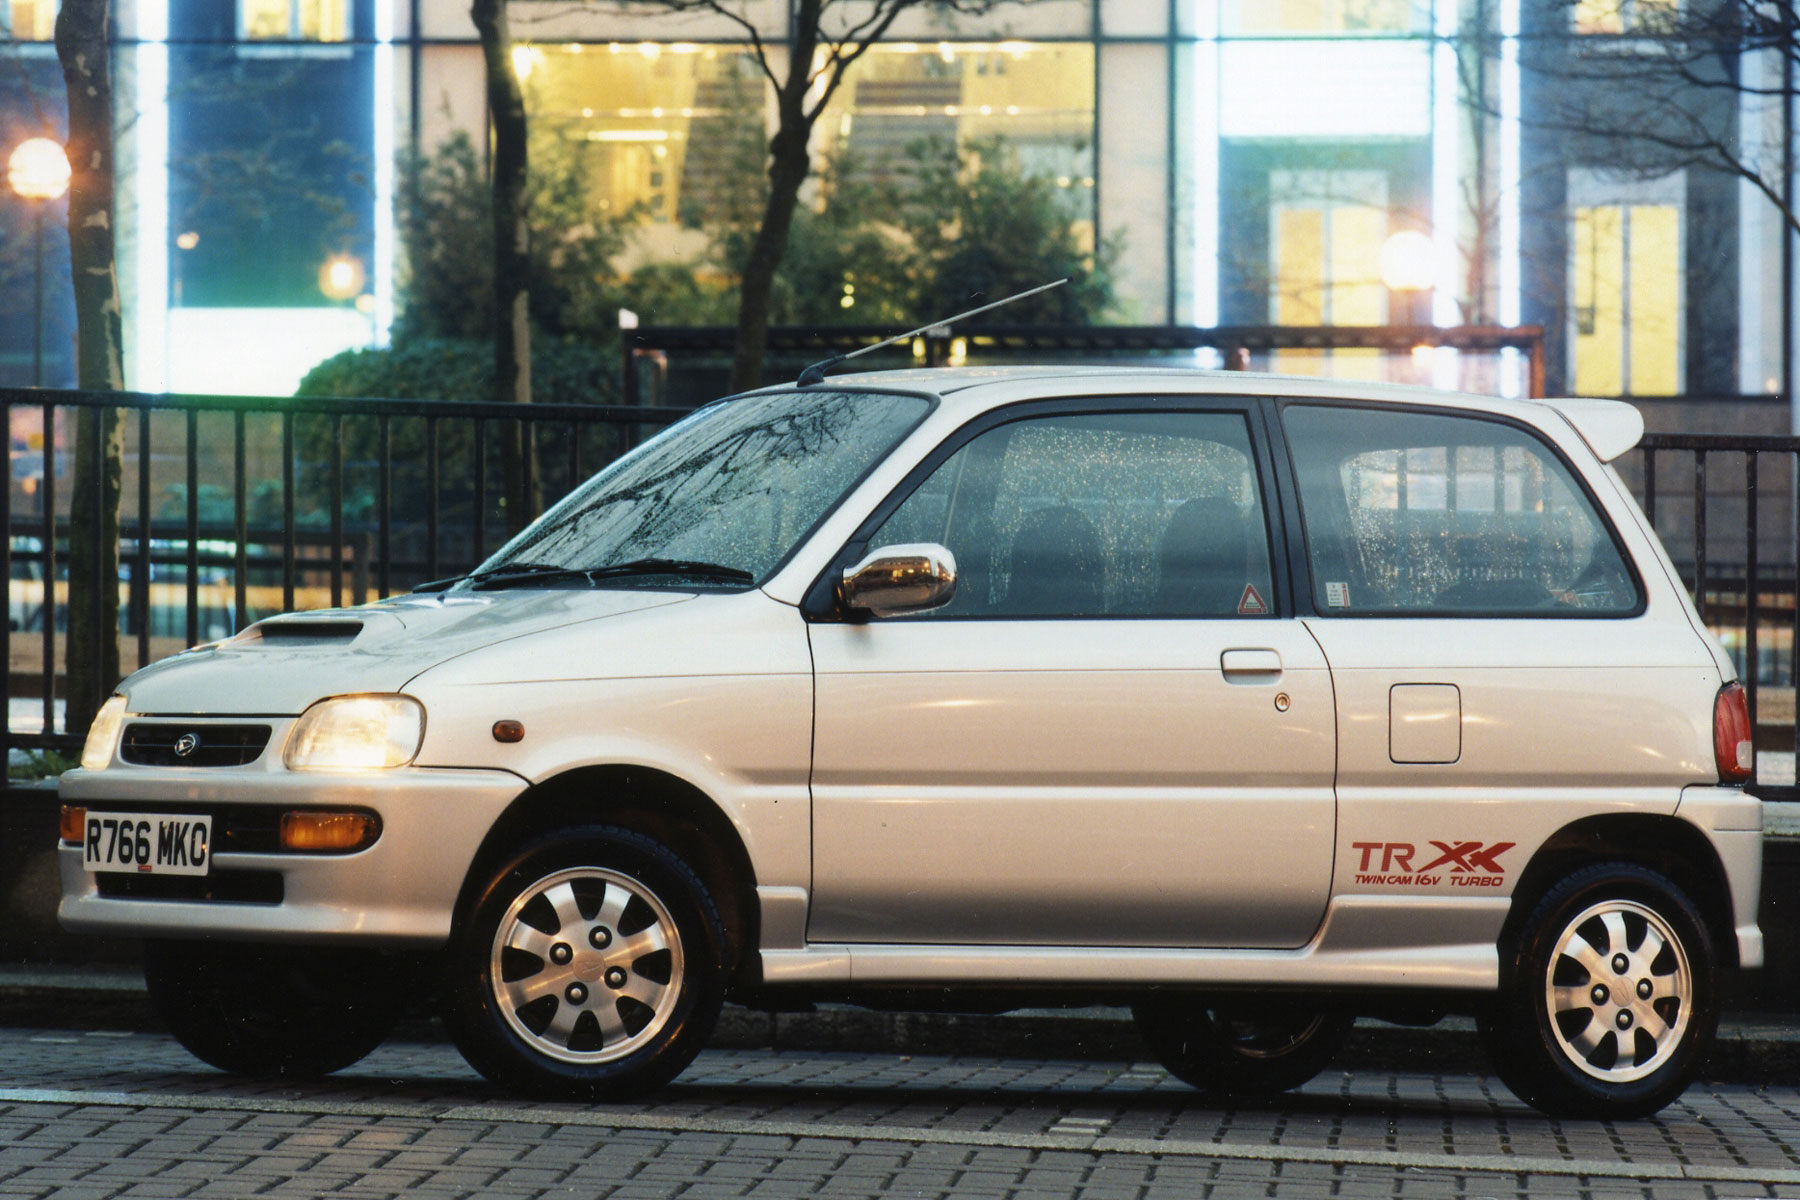 Daihatsu Cuore Avanzato TR-XX R4